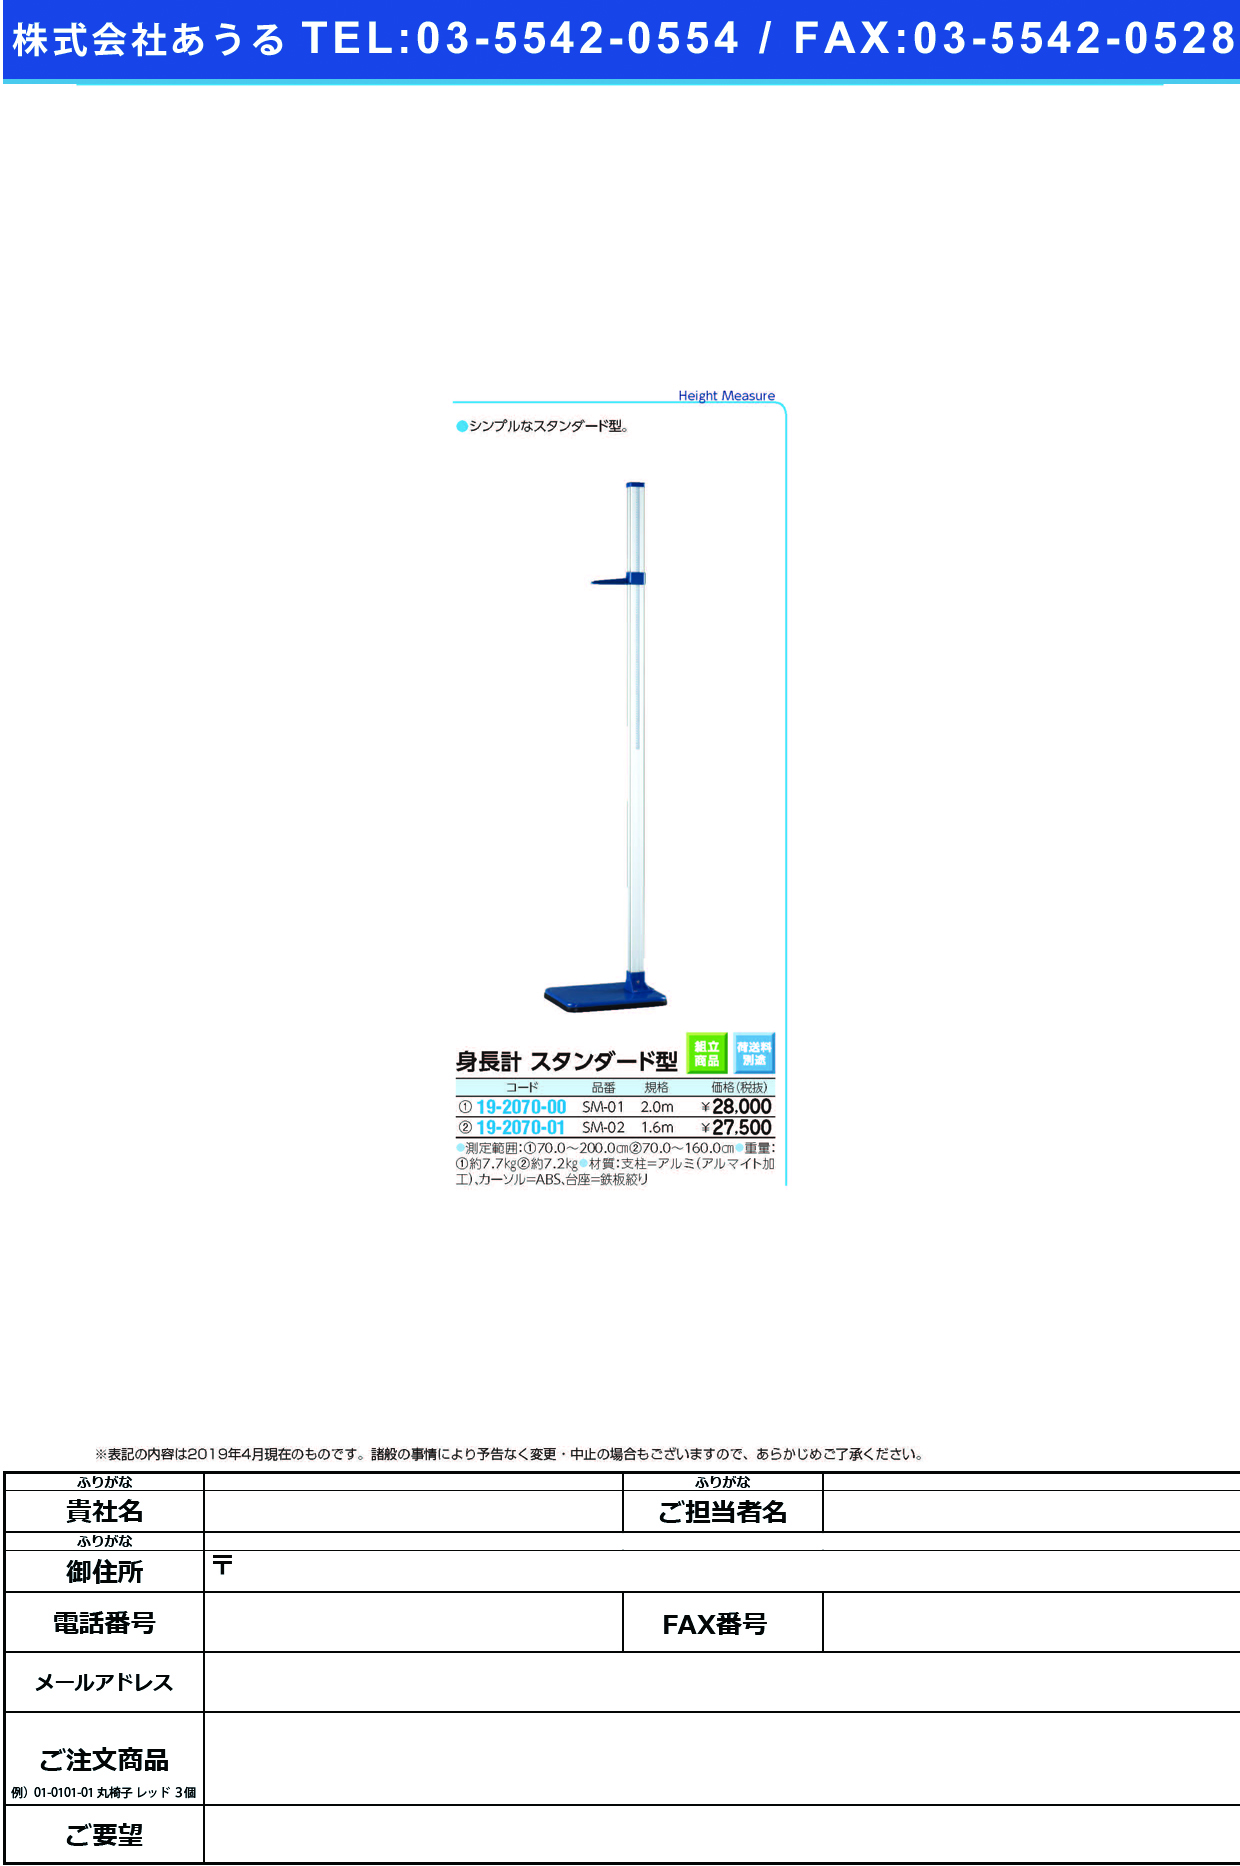 (19-2070-01)身長計スタンダード型 SM-02(1.6M) ｼﾝﾁｮｳｹｲｽﾀﾝﾀﾞｰﾄﾞｶﾞﾀ【1台単位】【2019年カタログ商品】